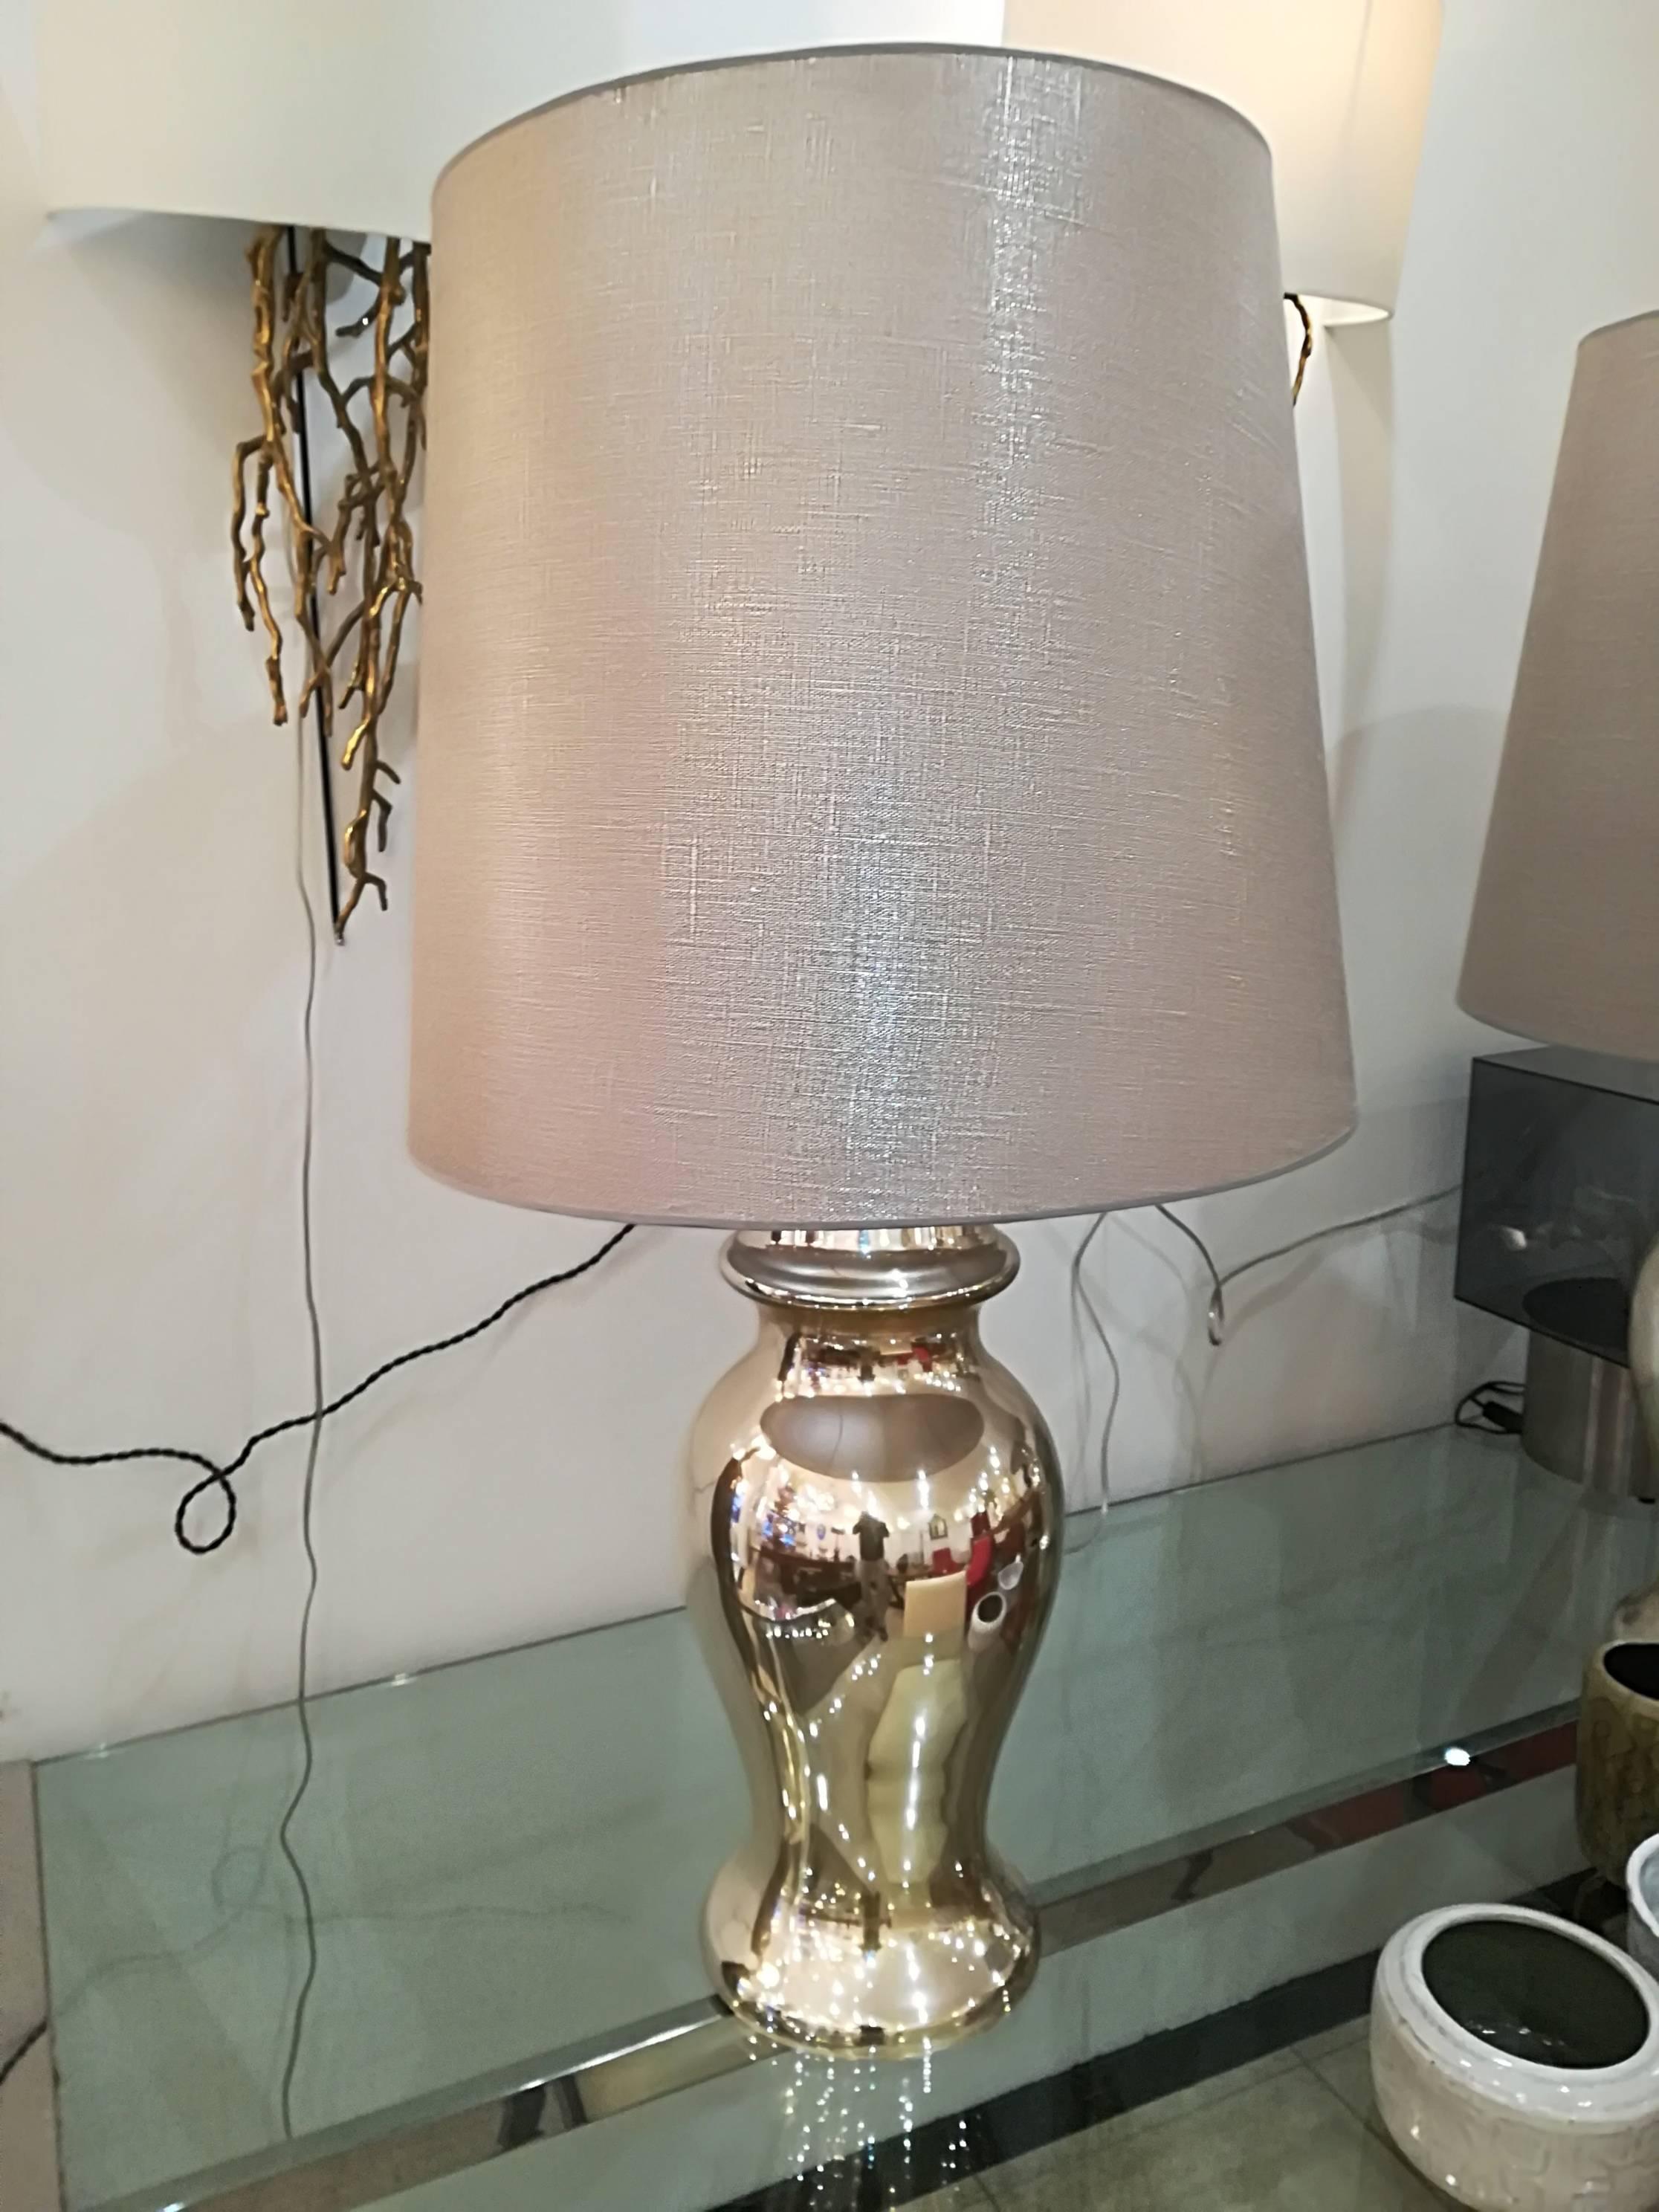 Belle paire d'églomètres  (argenté avec des reflets dorés) lampes de table, en excellent état, fournies avec des abat-jour.
Pied de lampe seul : 57cm